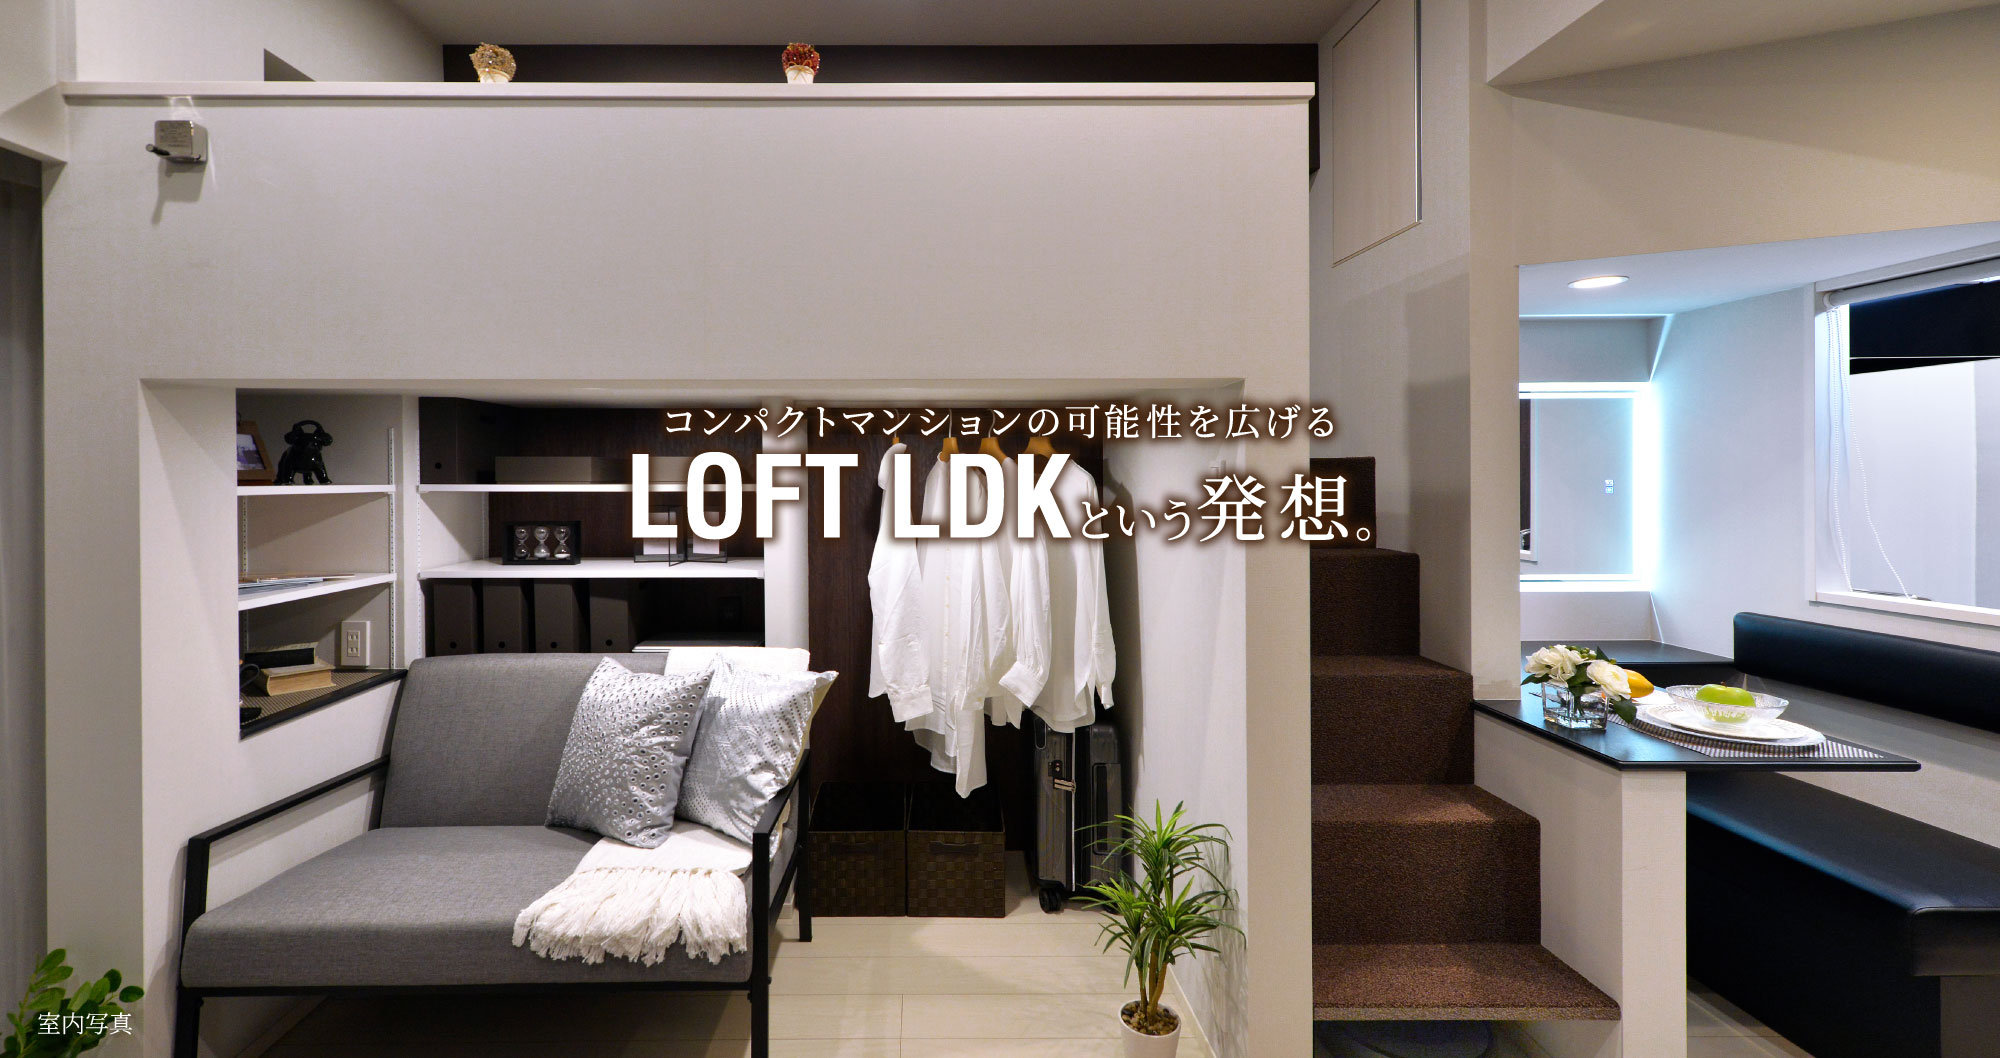 コンパクトマンションの可能性を広げるLOFT LDKという発想。イメージ01